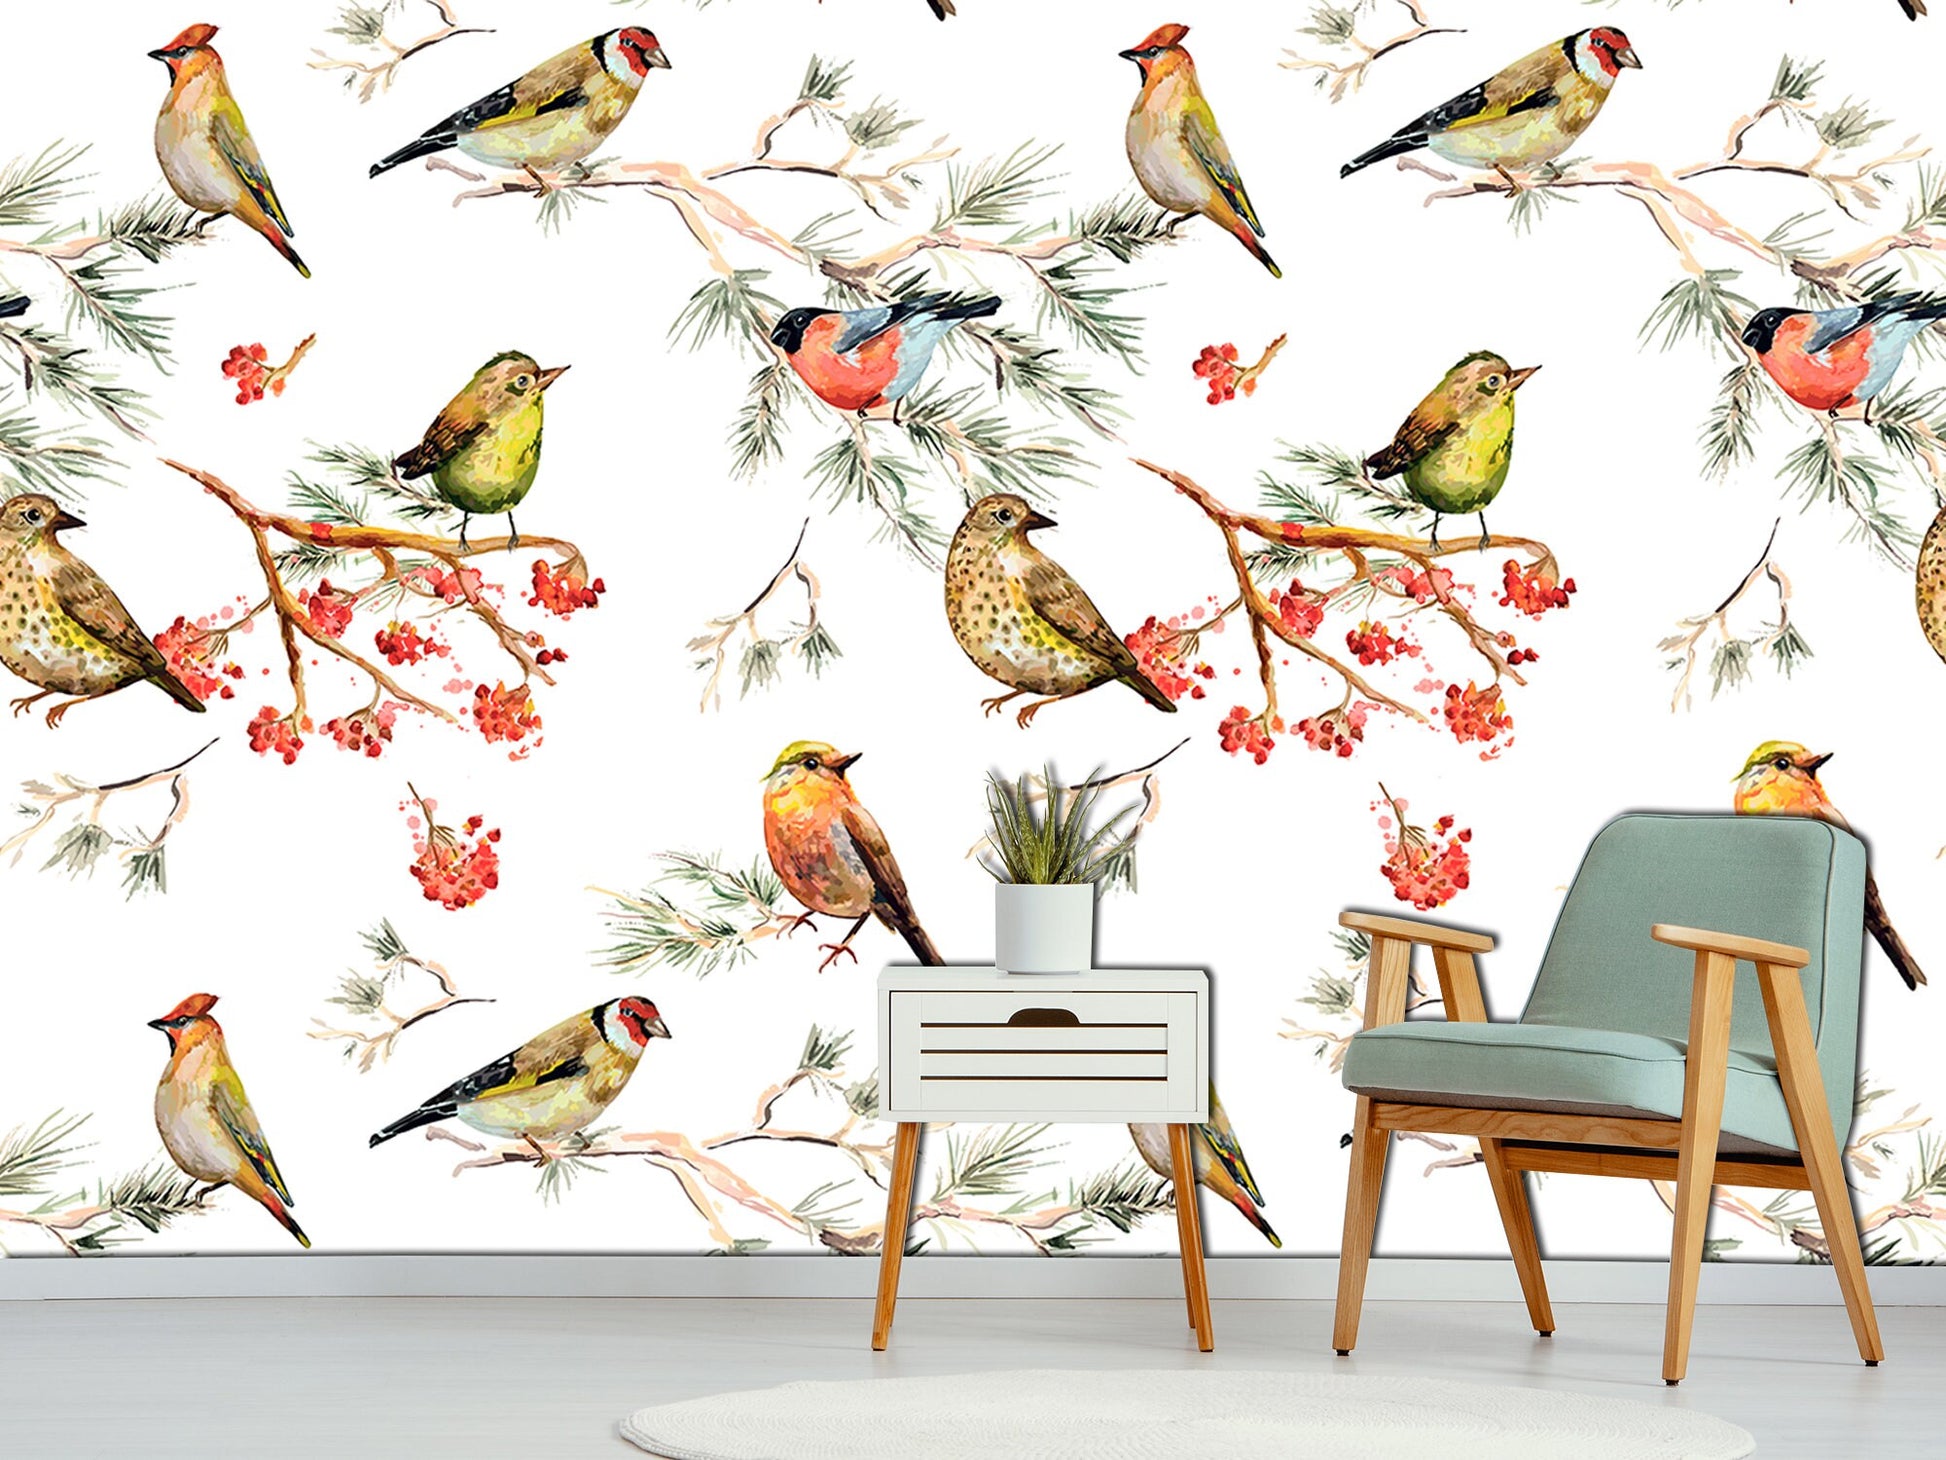 Winter bird decor Forest wallpaper Bird wall art, Art deco wallpaper Bird lover gift Colorful home decor